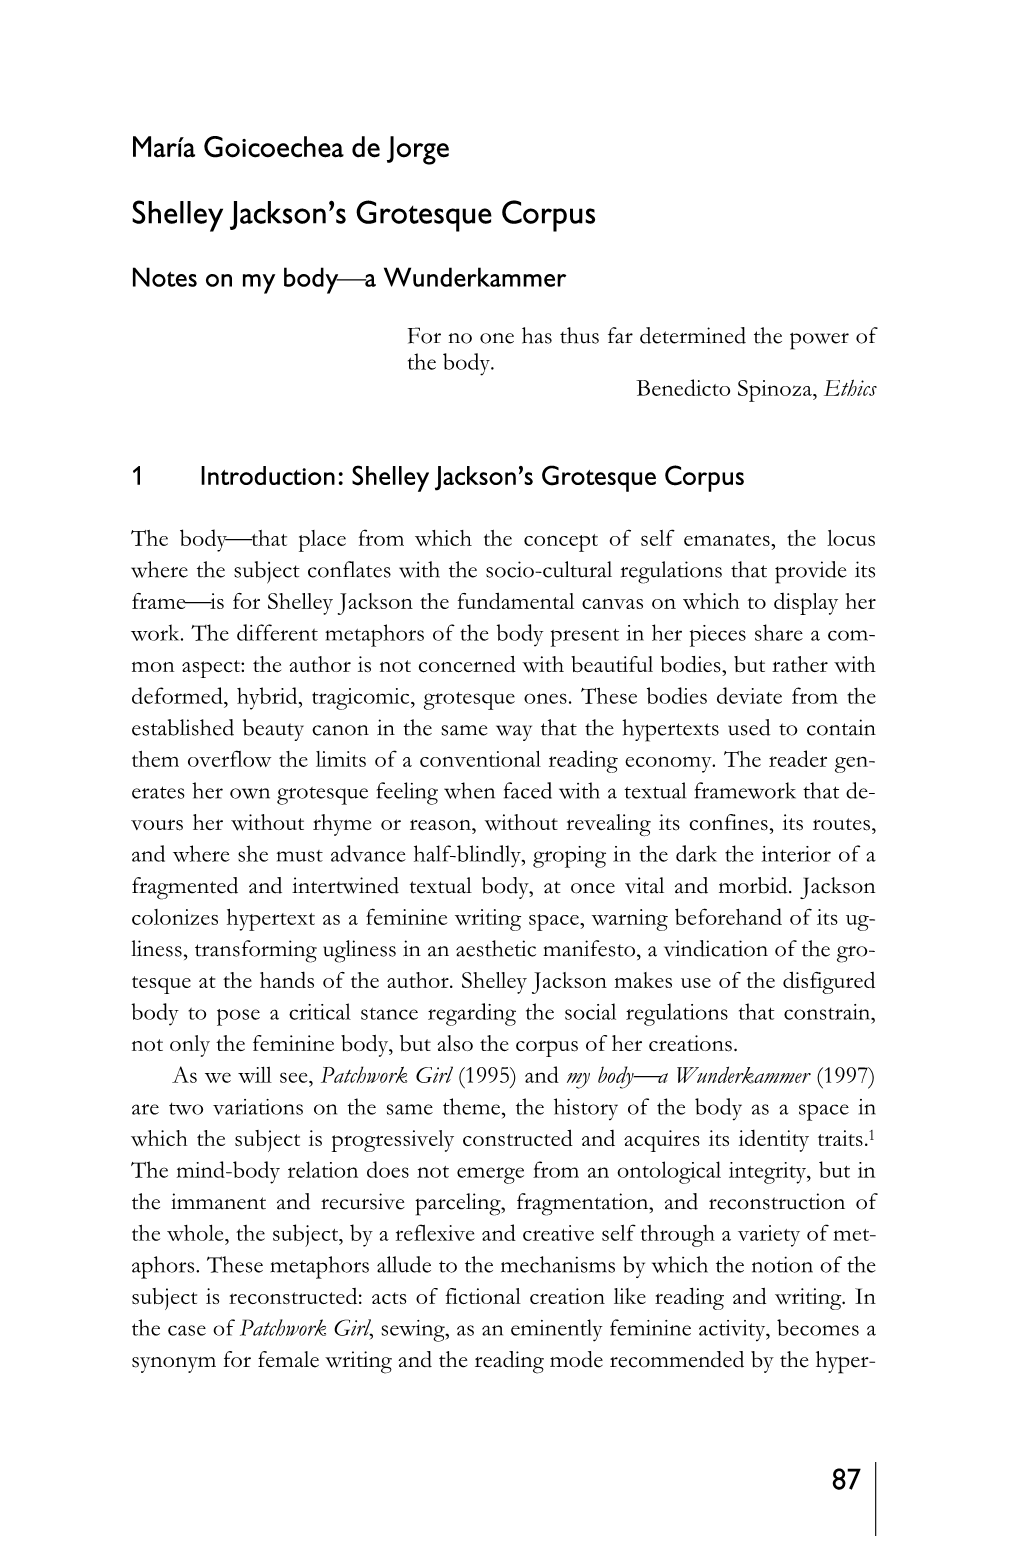 Shelley Jackson's Grotesque Corpus